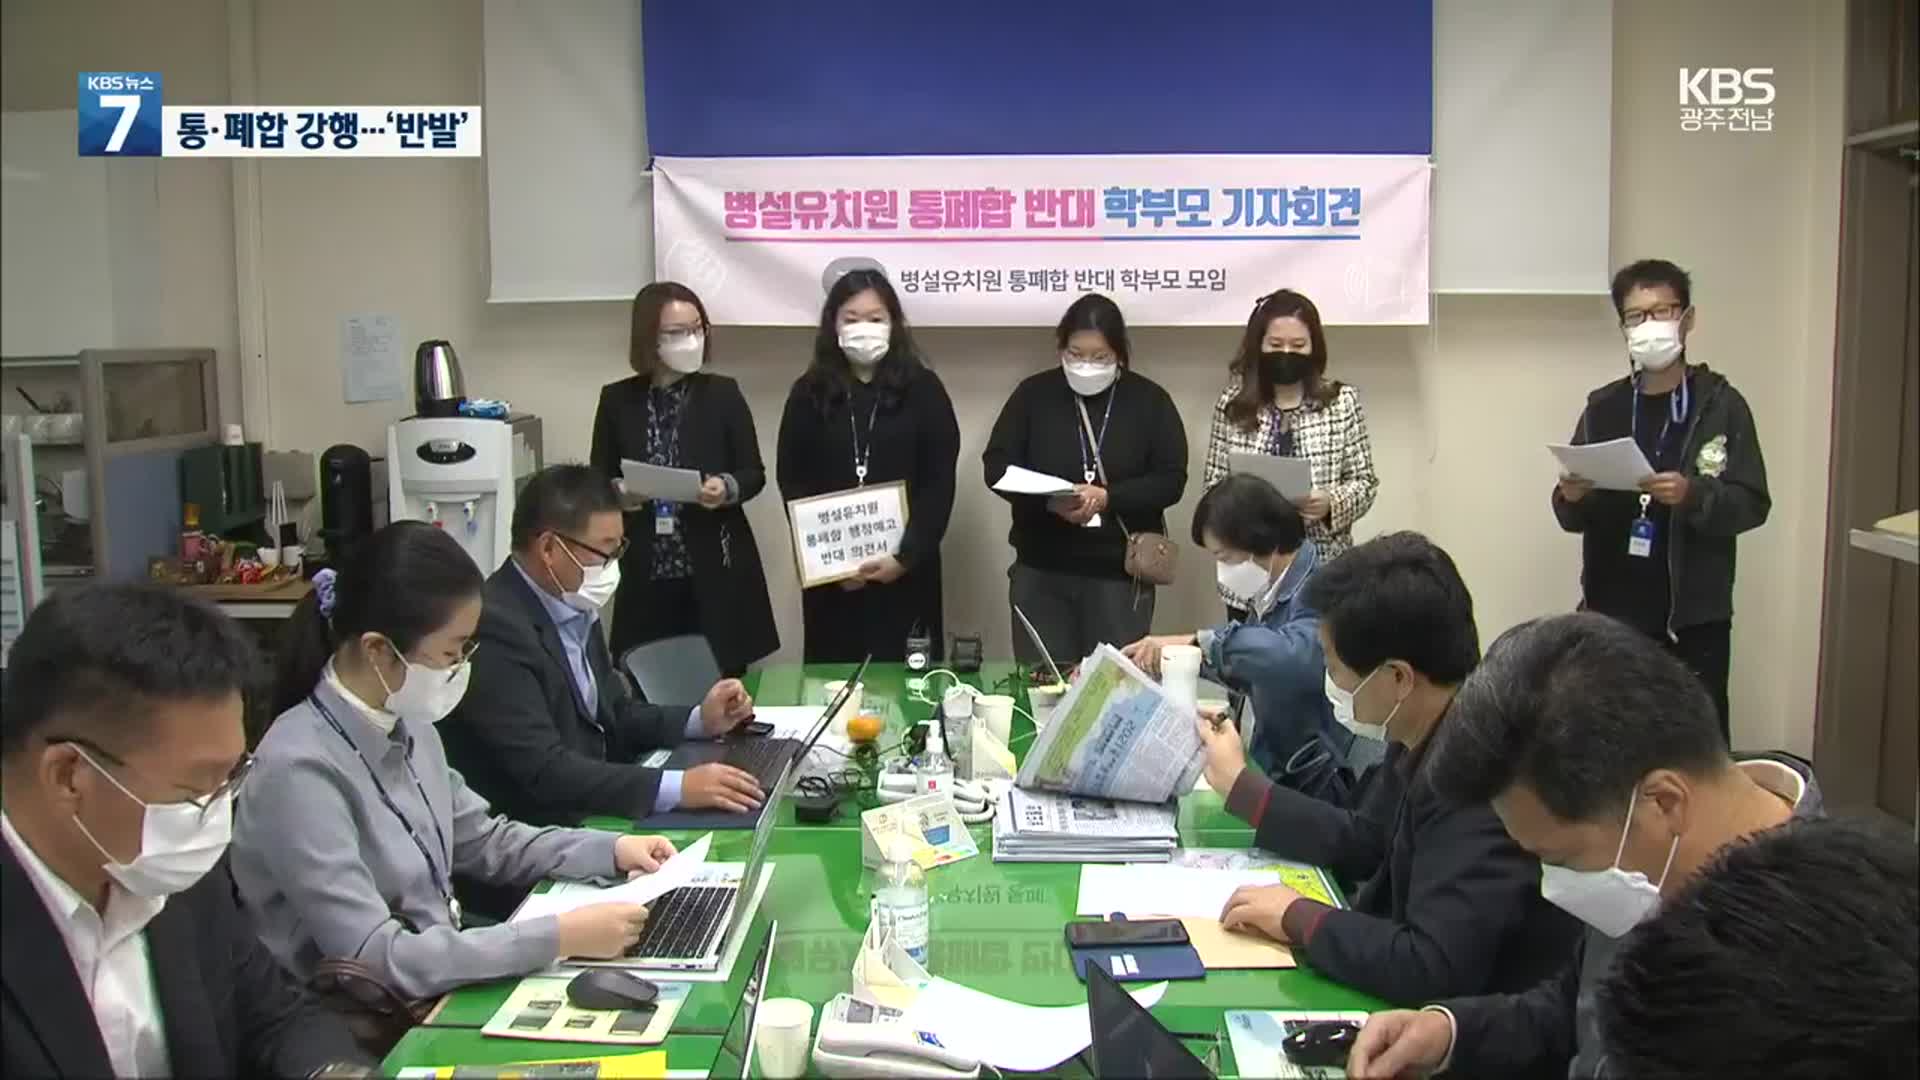 광주 병설 유치원 통·폐합 행정 예고…“반대해도 강행”